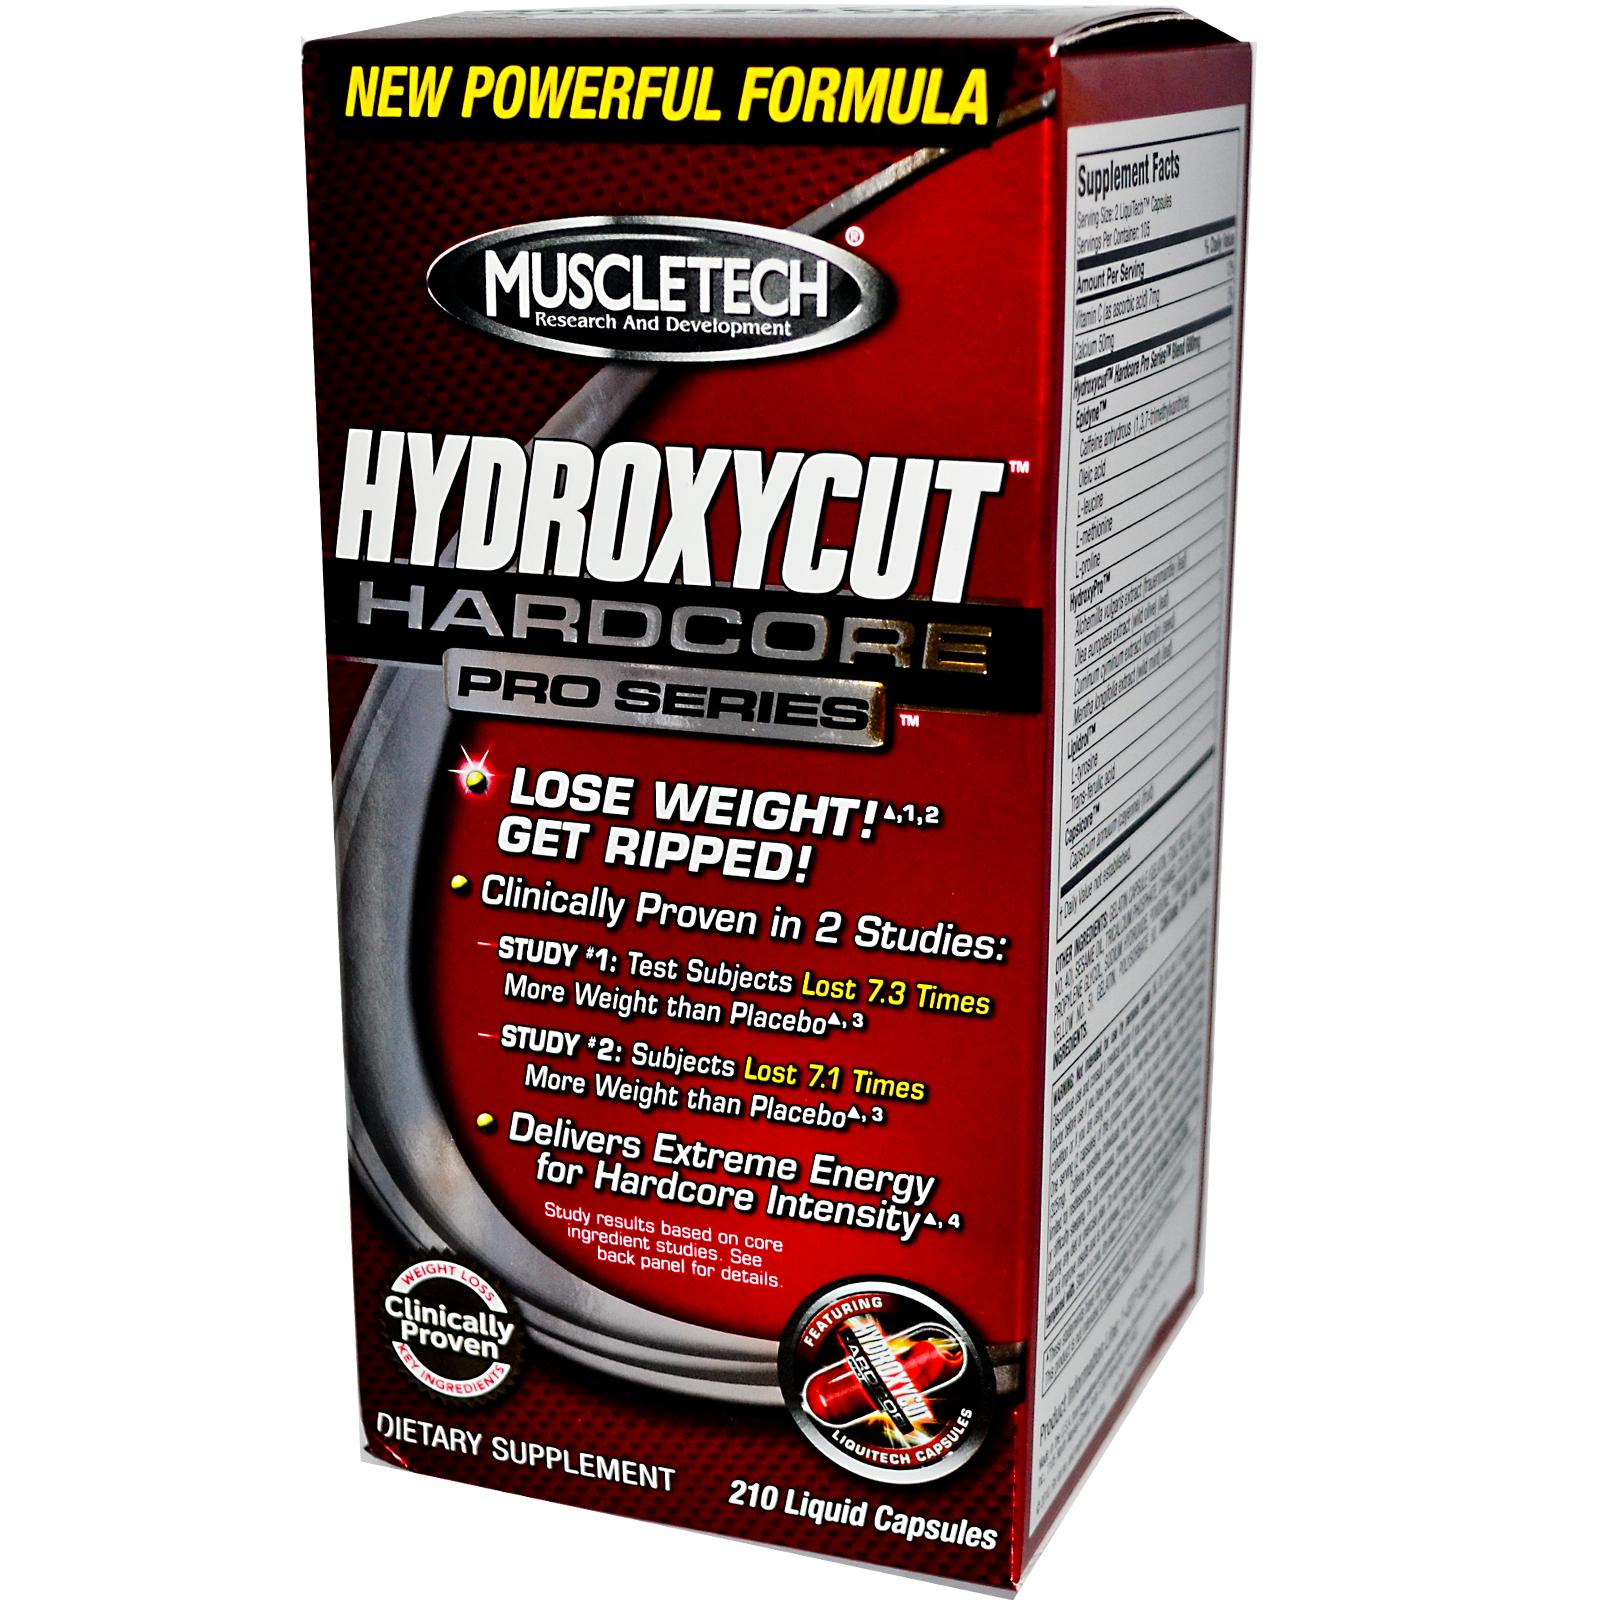 Hydroxycut Hardcore, 210 pcs, MuscleTech. Fat Burner. Weight Loss Fat burning 